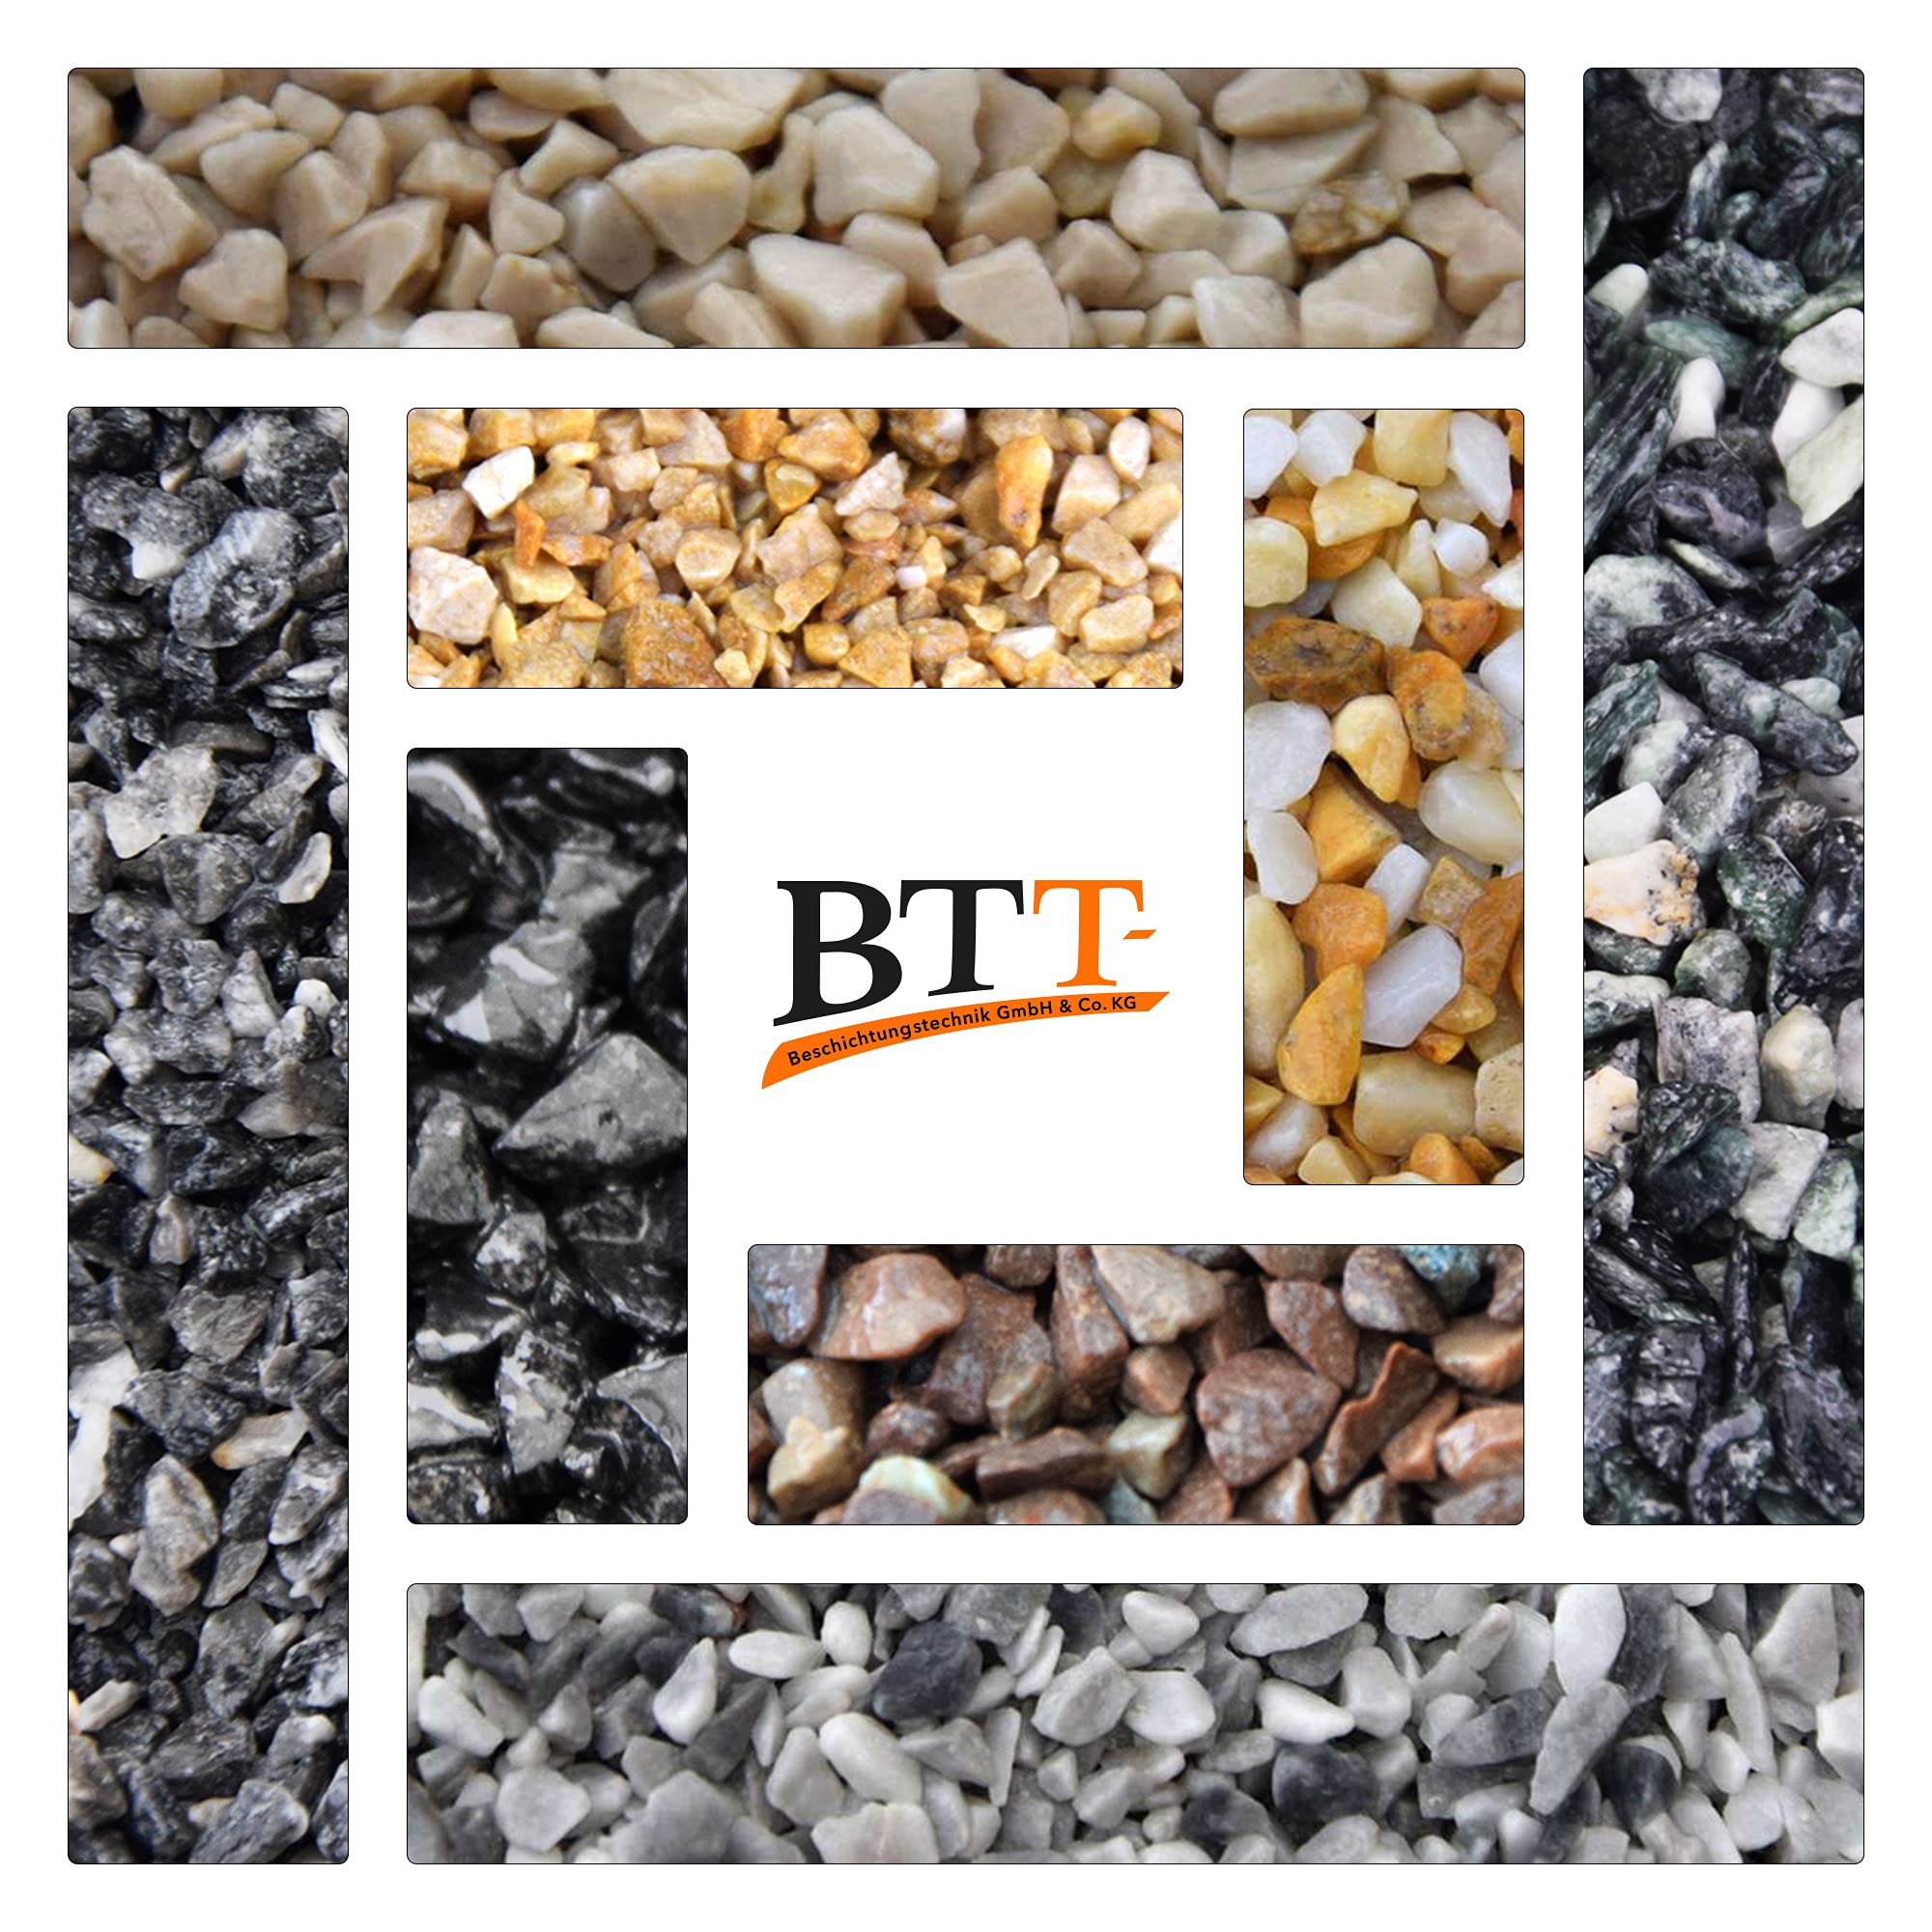 BTT-ST Steinteppich aus Marmorkies Giallo Mori und Epoxidharz Bindemittel für 7,2m² Marmorstein Marmorkiesel Steinboden Bodenbeschichtung